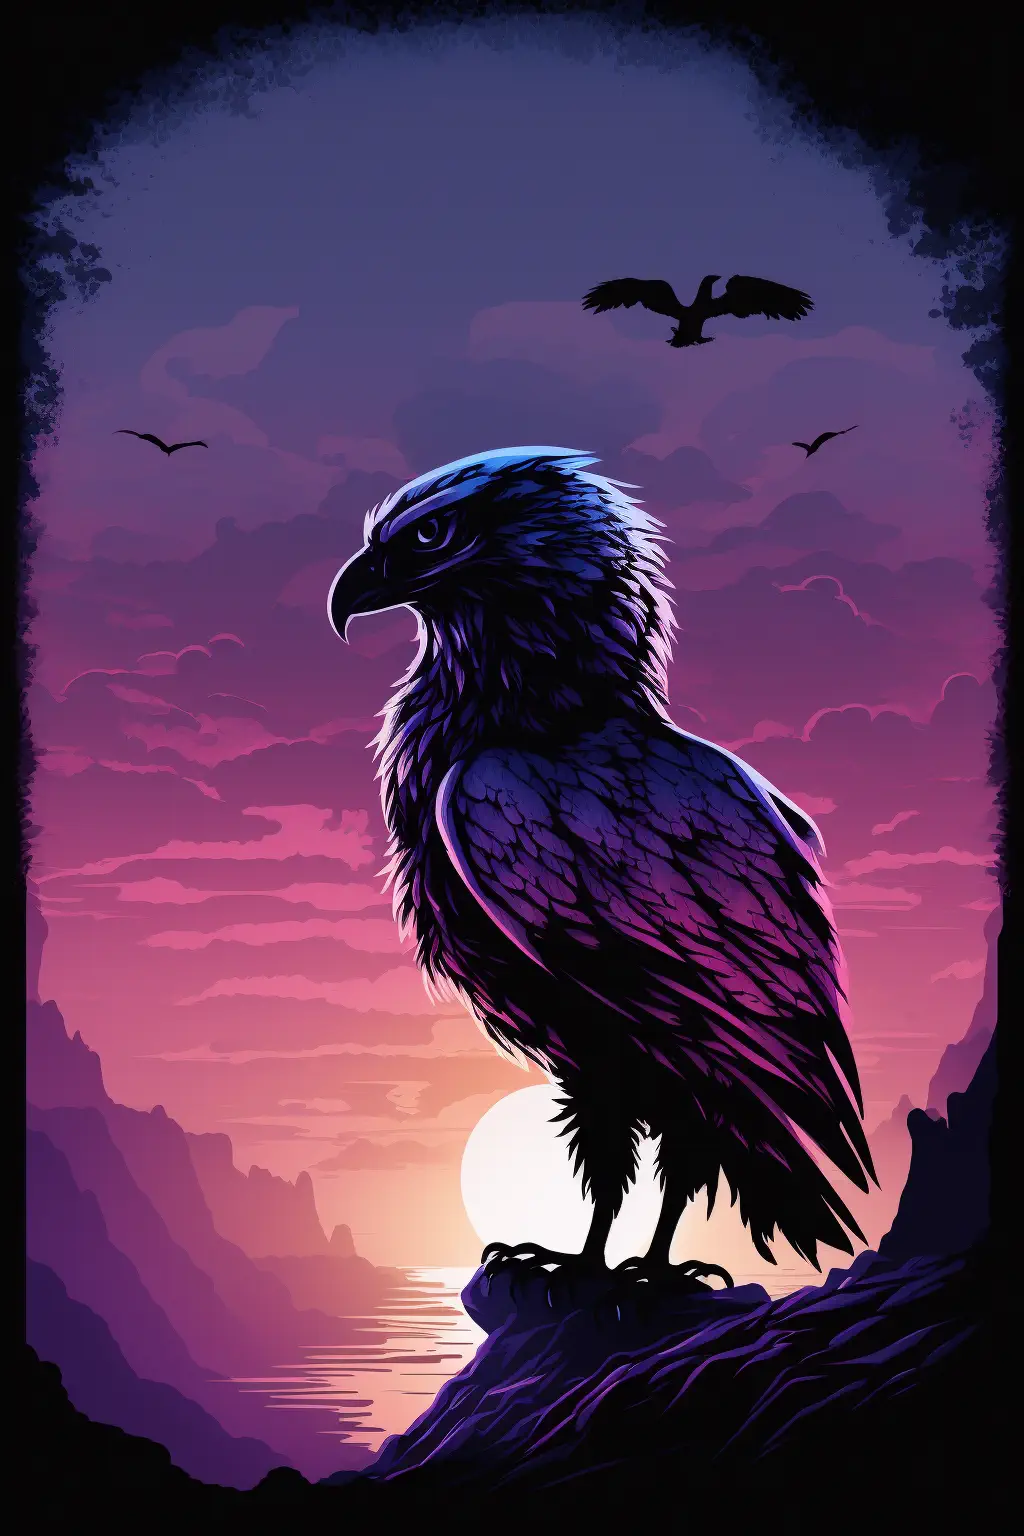 Drakosha_blue_sky_in_background_purple_and_dark_mystical_griffo_5235204c-e5ab-4c7e-964e-b212338d4c00